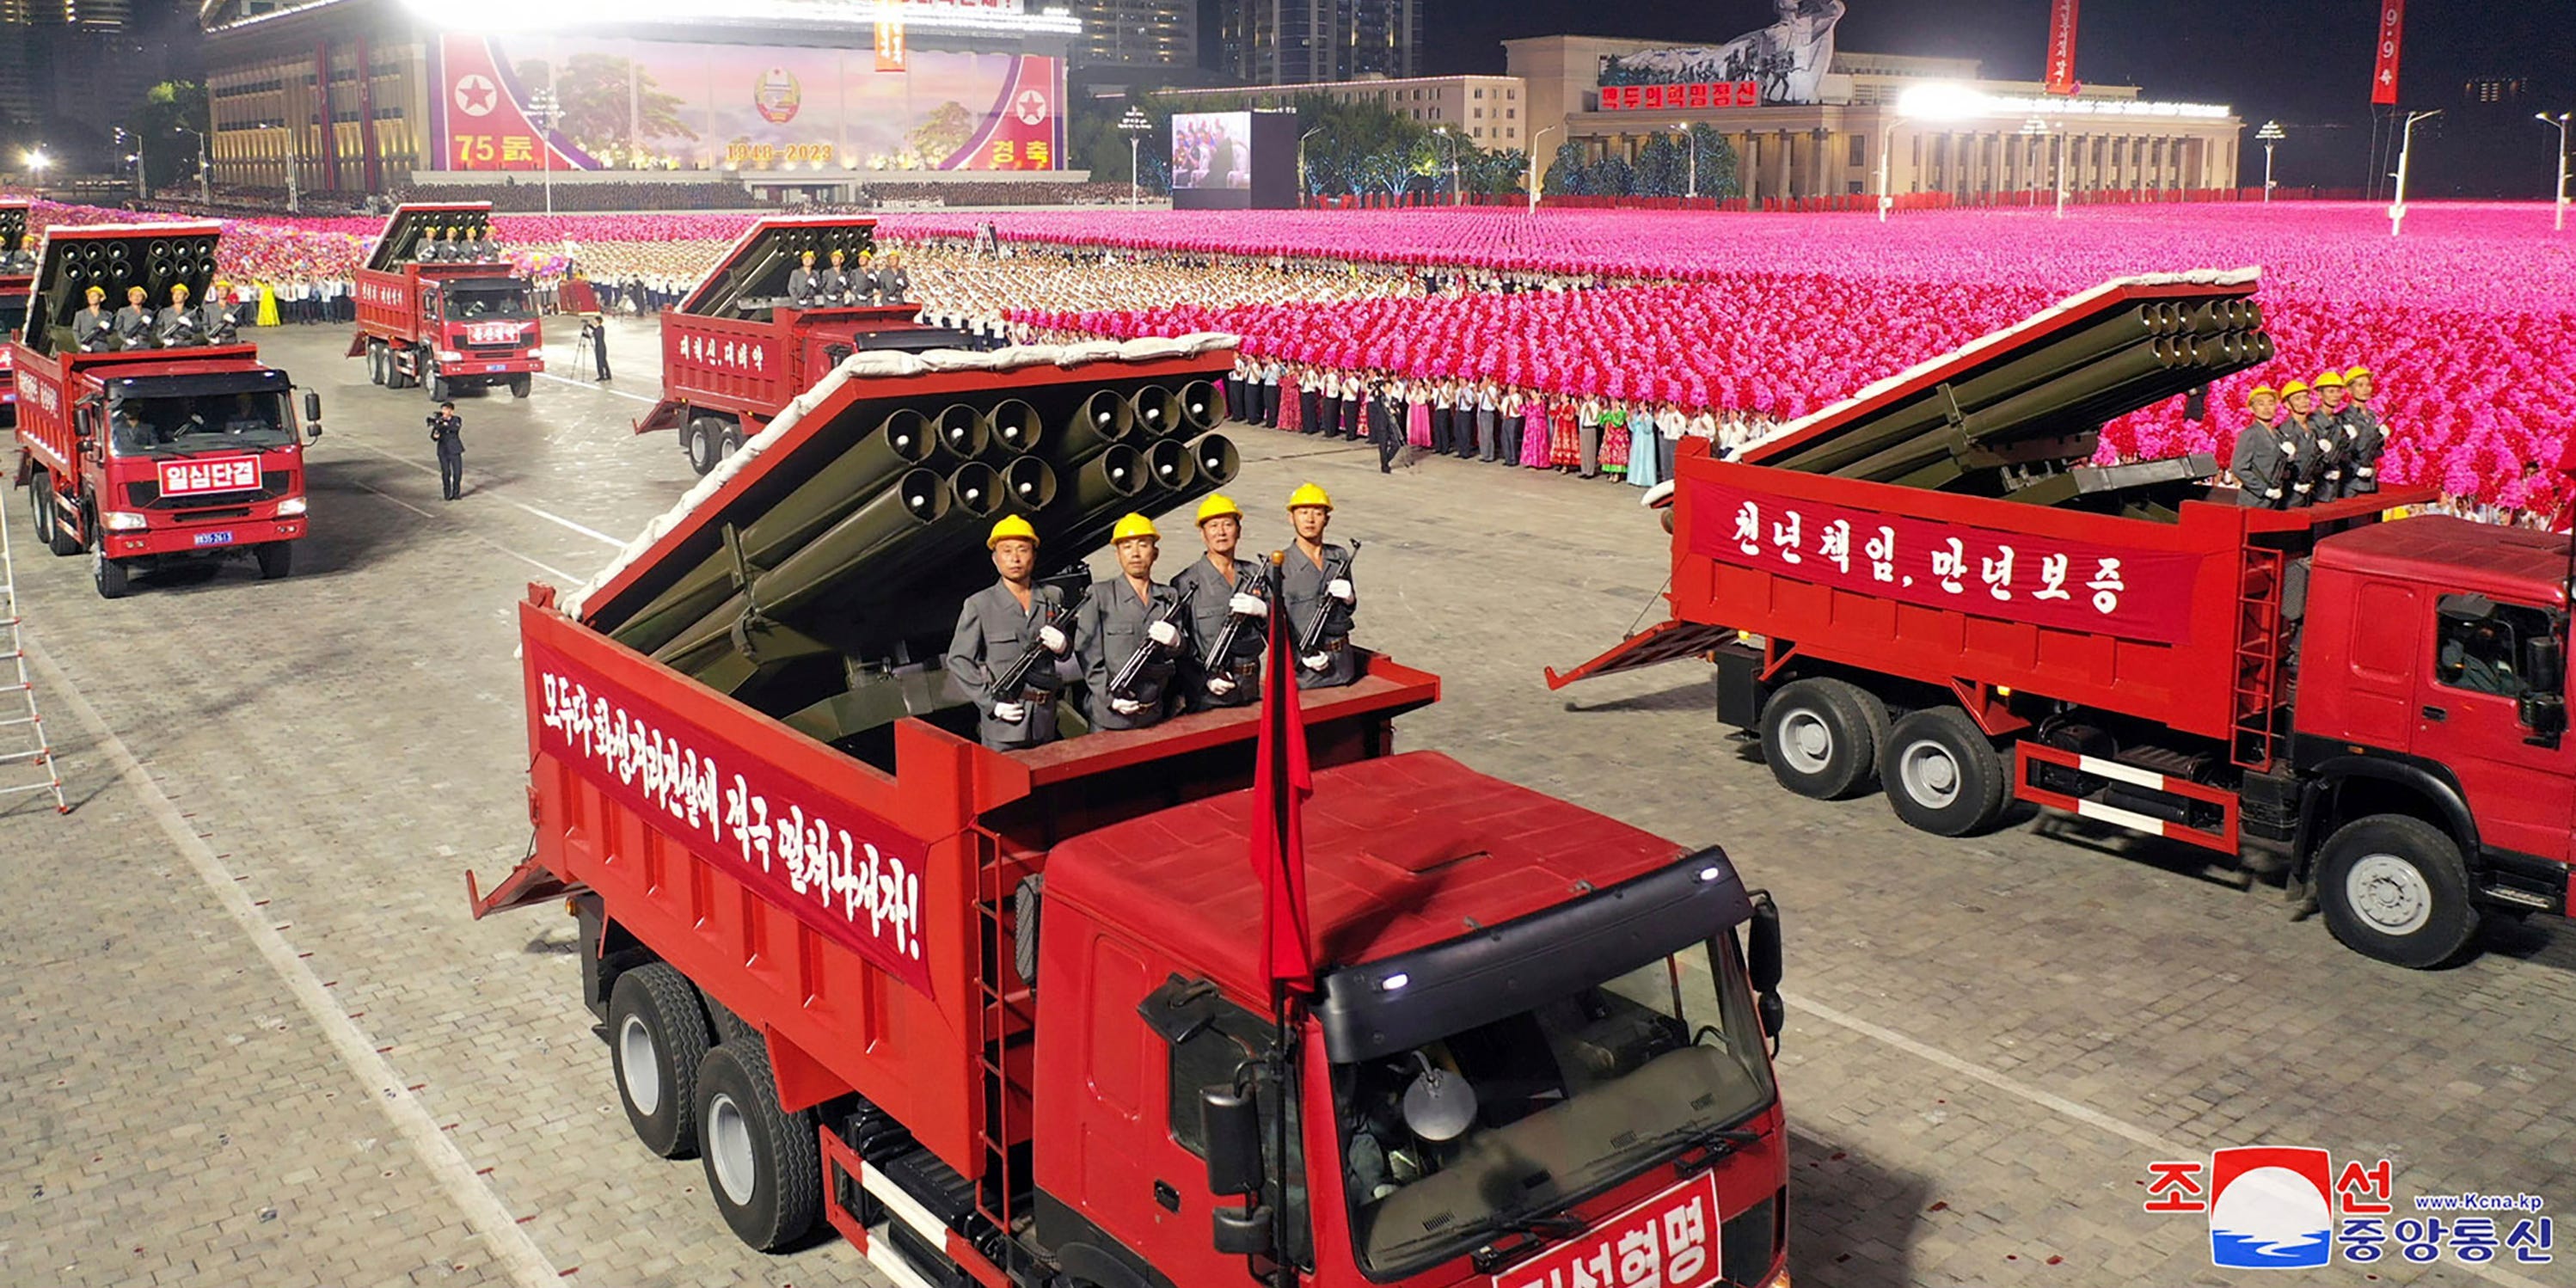 Auf dem roten Lastwagen im Vordergrund tauchen vier Personen in grauen Anzügen und gelben Helmen neben Raketenwerfern auf.  Weitere solcher Lastwagen umgeben es, und in der Ferne stehen Menschenmengen in rosafarbenen Gewändern